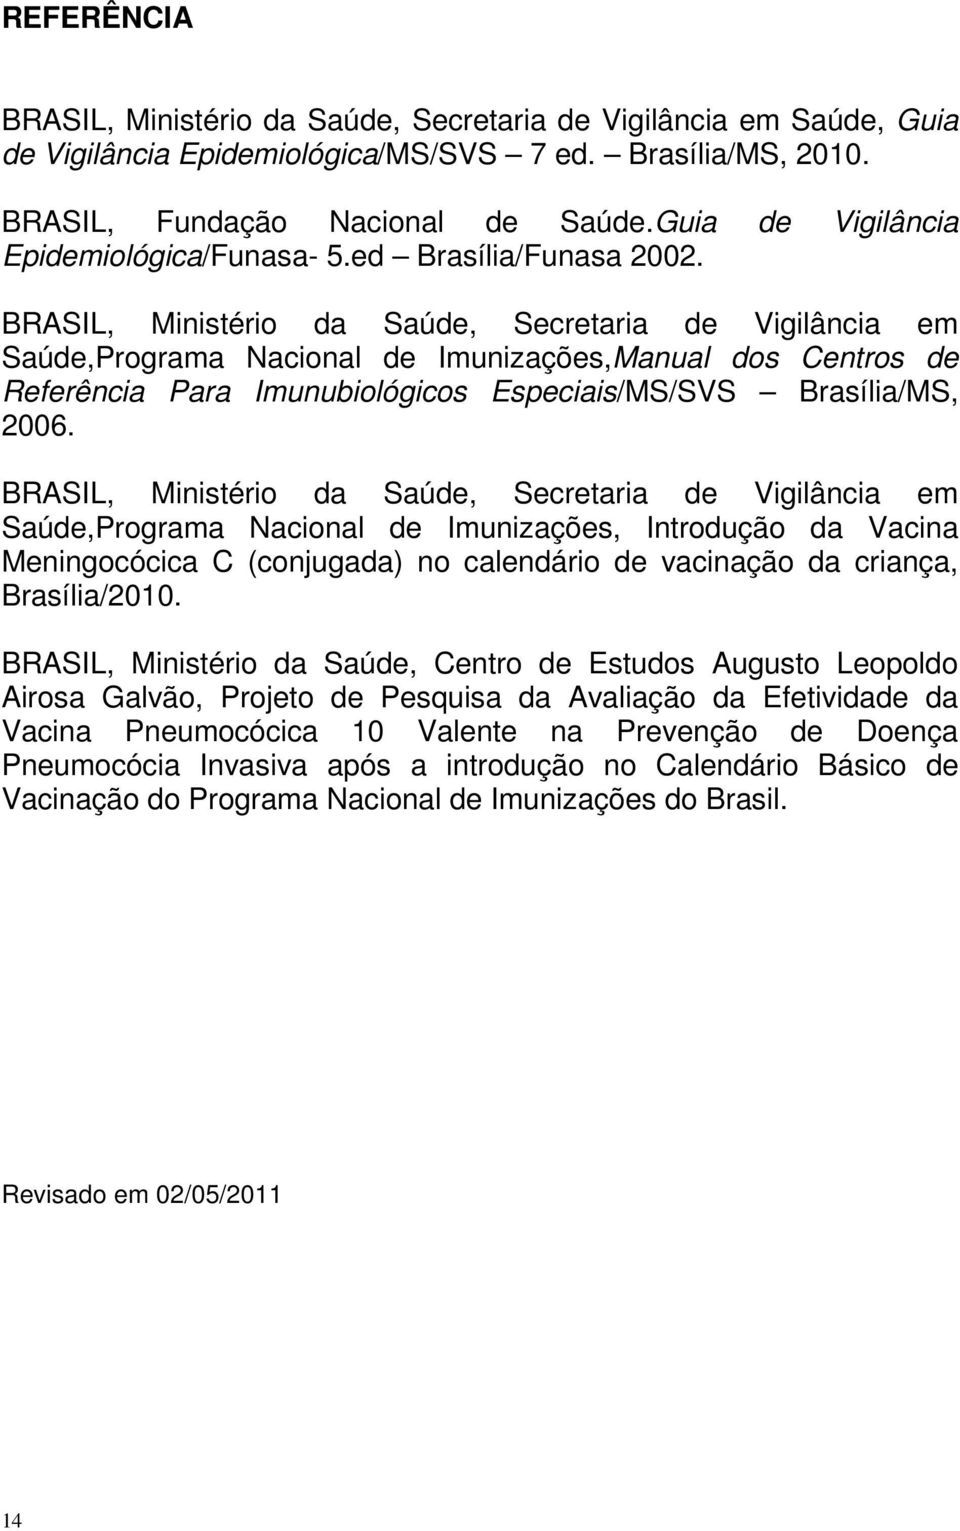 BRASIL, Ministério da Saúde, Secretaria de Vigilância em Saúde,Programa Nacional de Imunizações,Manual dos Centros de Referência Para Imunubiológicos Especiais/MS/SVS Brasília/MS, 2006.